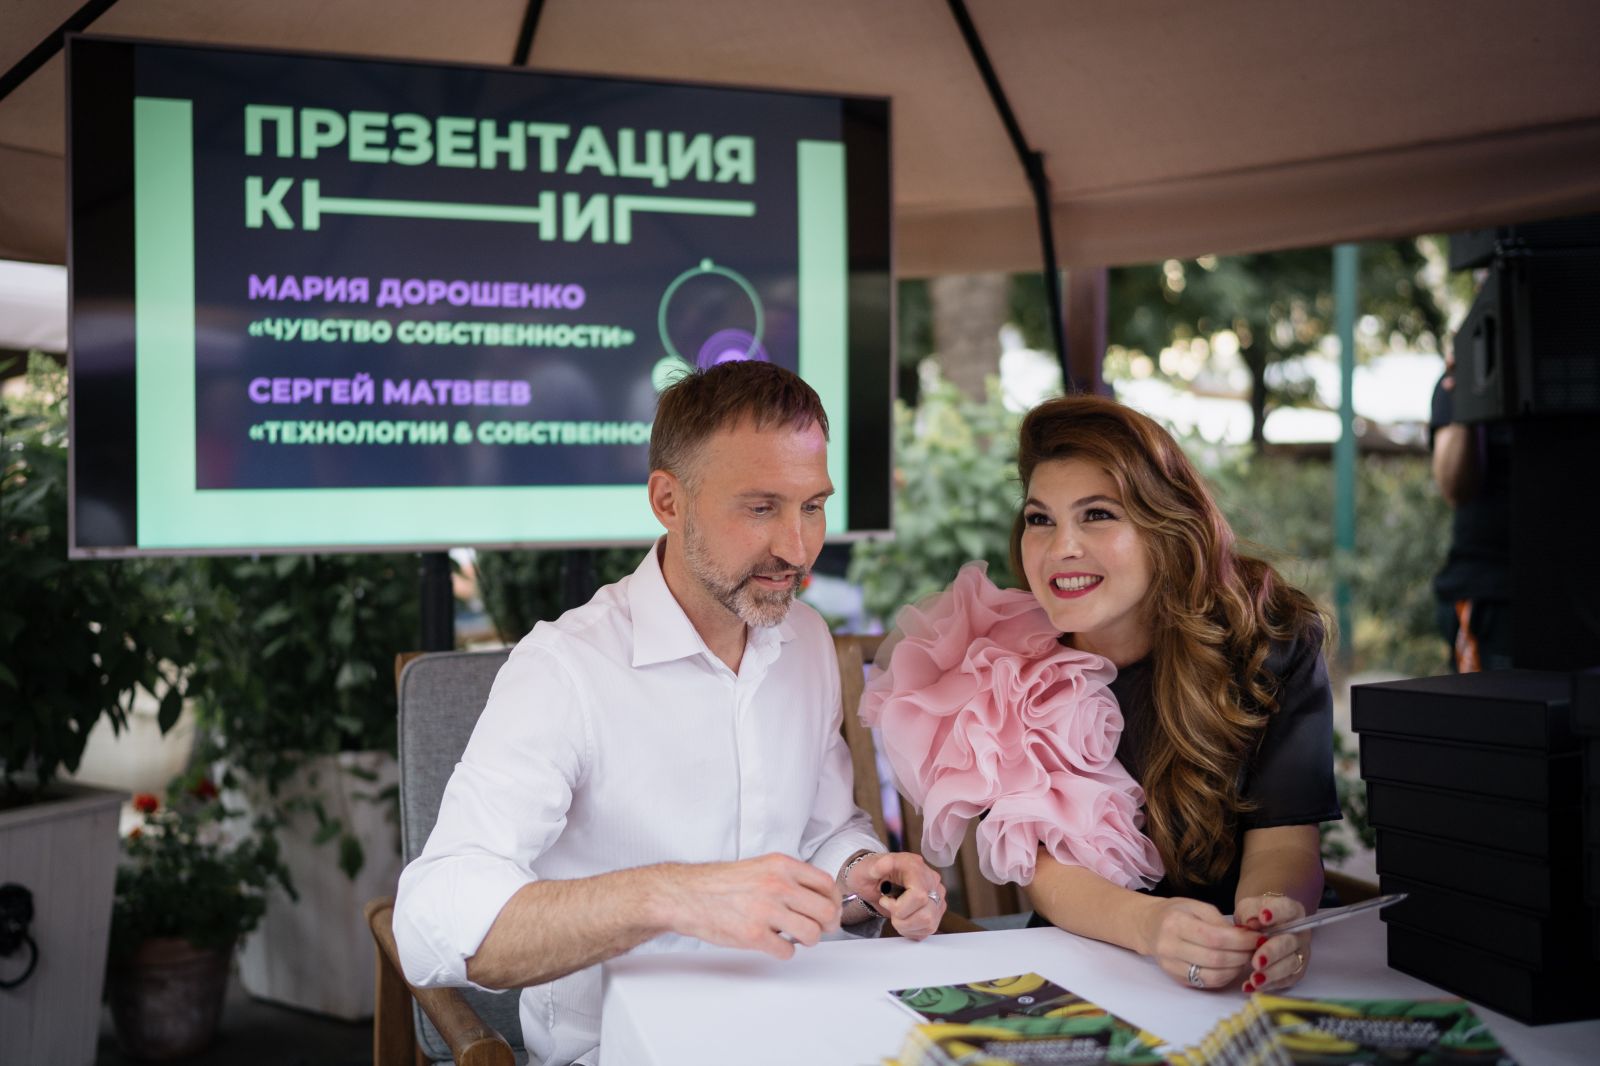 Сергей Матвеев и Мария Дорошенко представили книги об интеллектуальной собственности